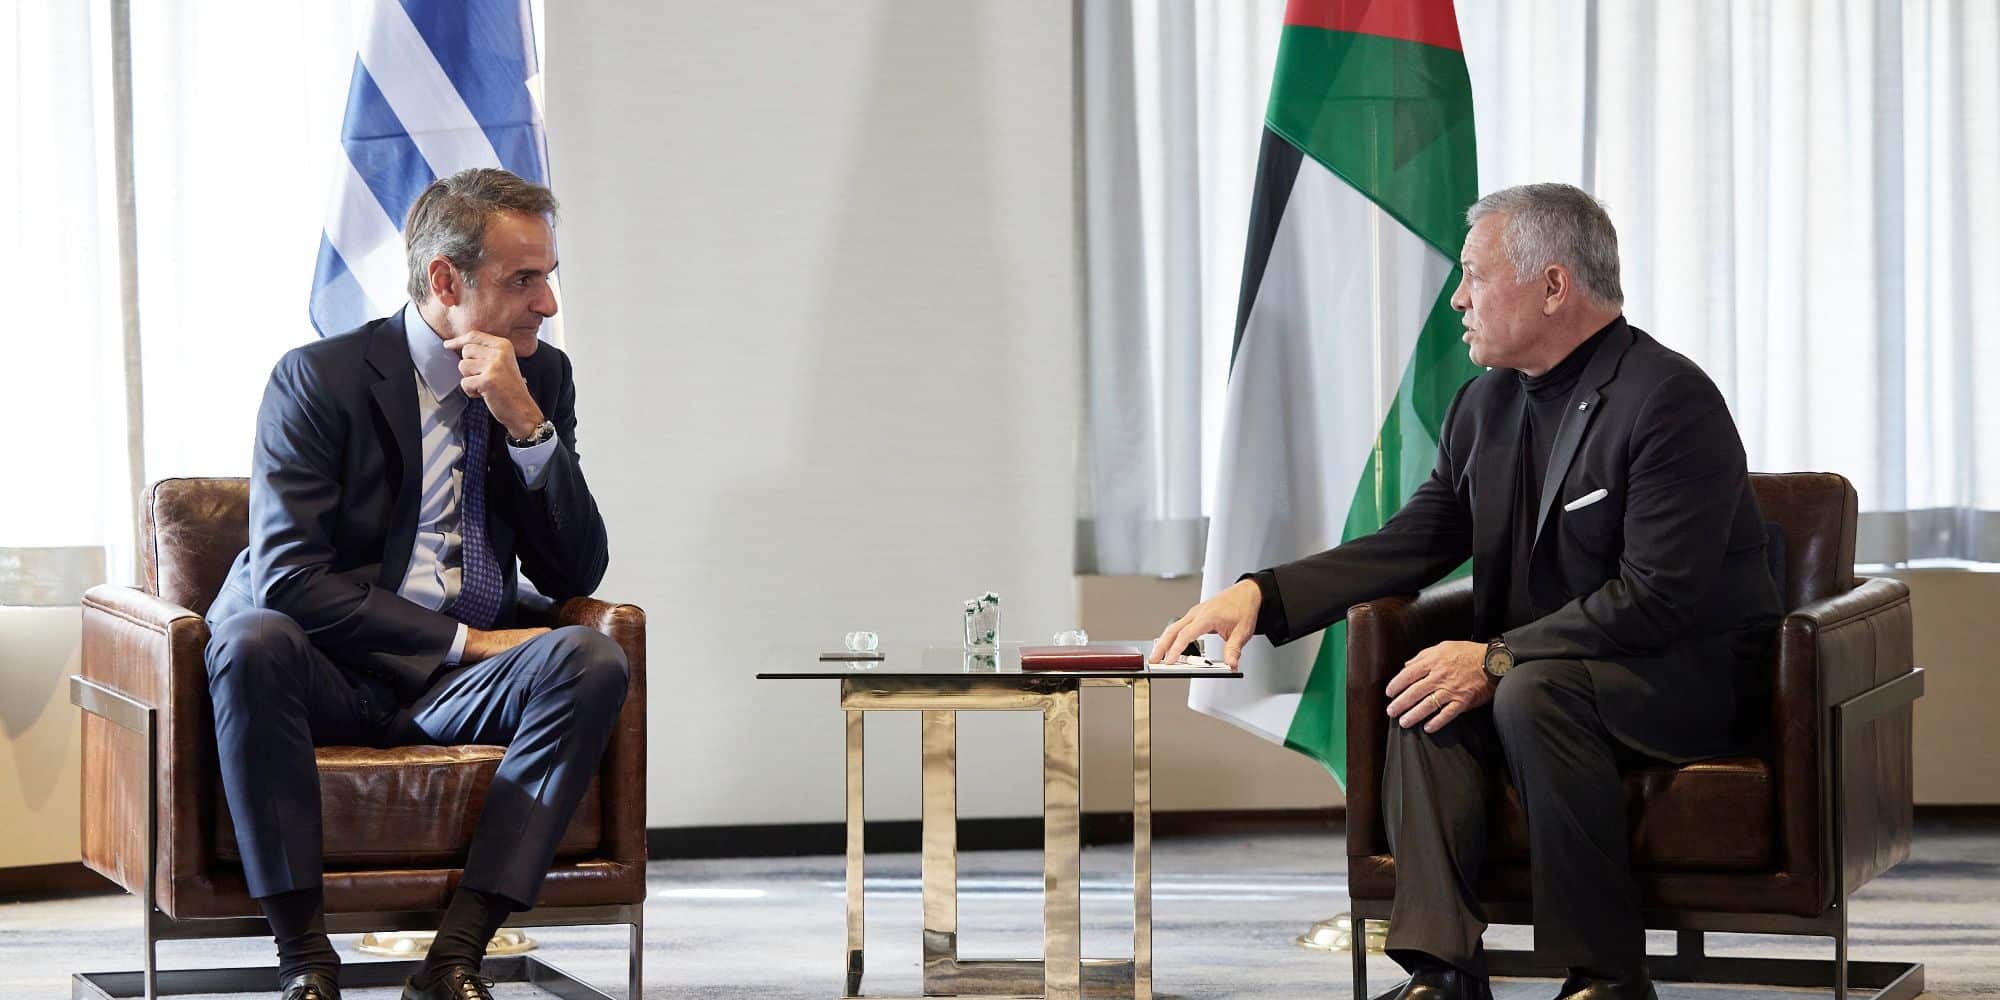 Ο Μητσοτάκης συναντήθηκε με τον Βασιλιά της Ιορδανίας, Αμπντουλάχ Β' - Τι συζήτησαν (εικόνες)